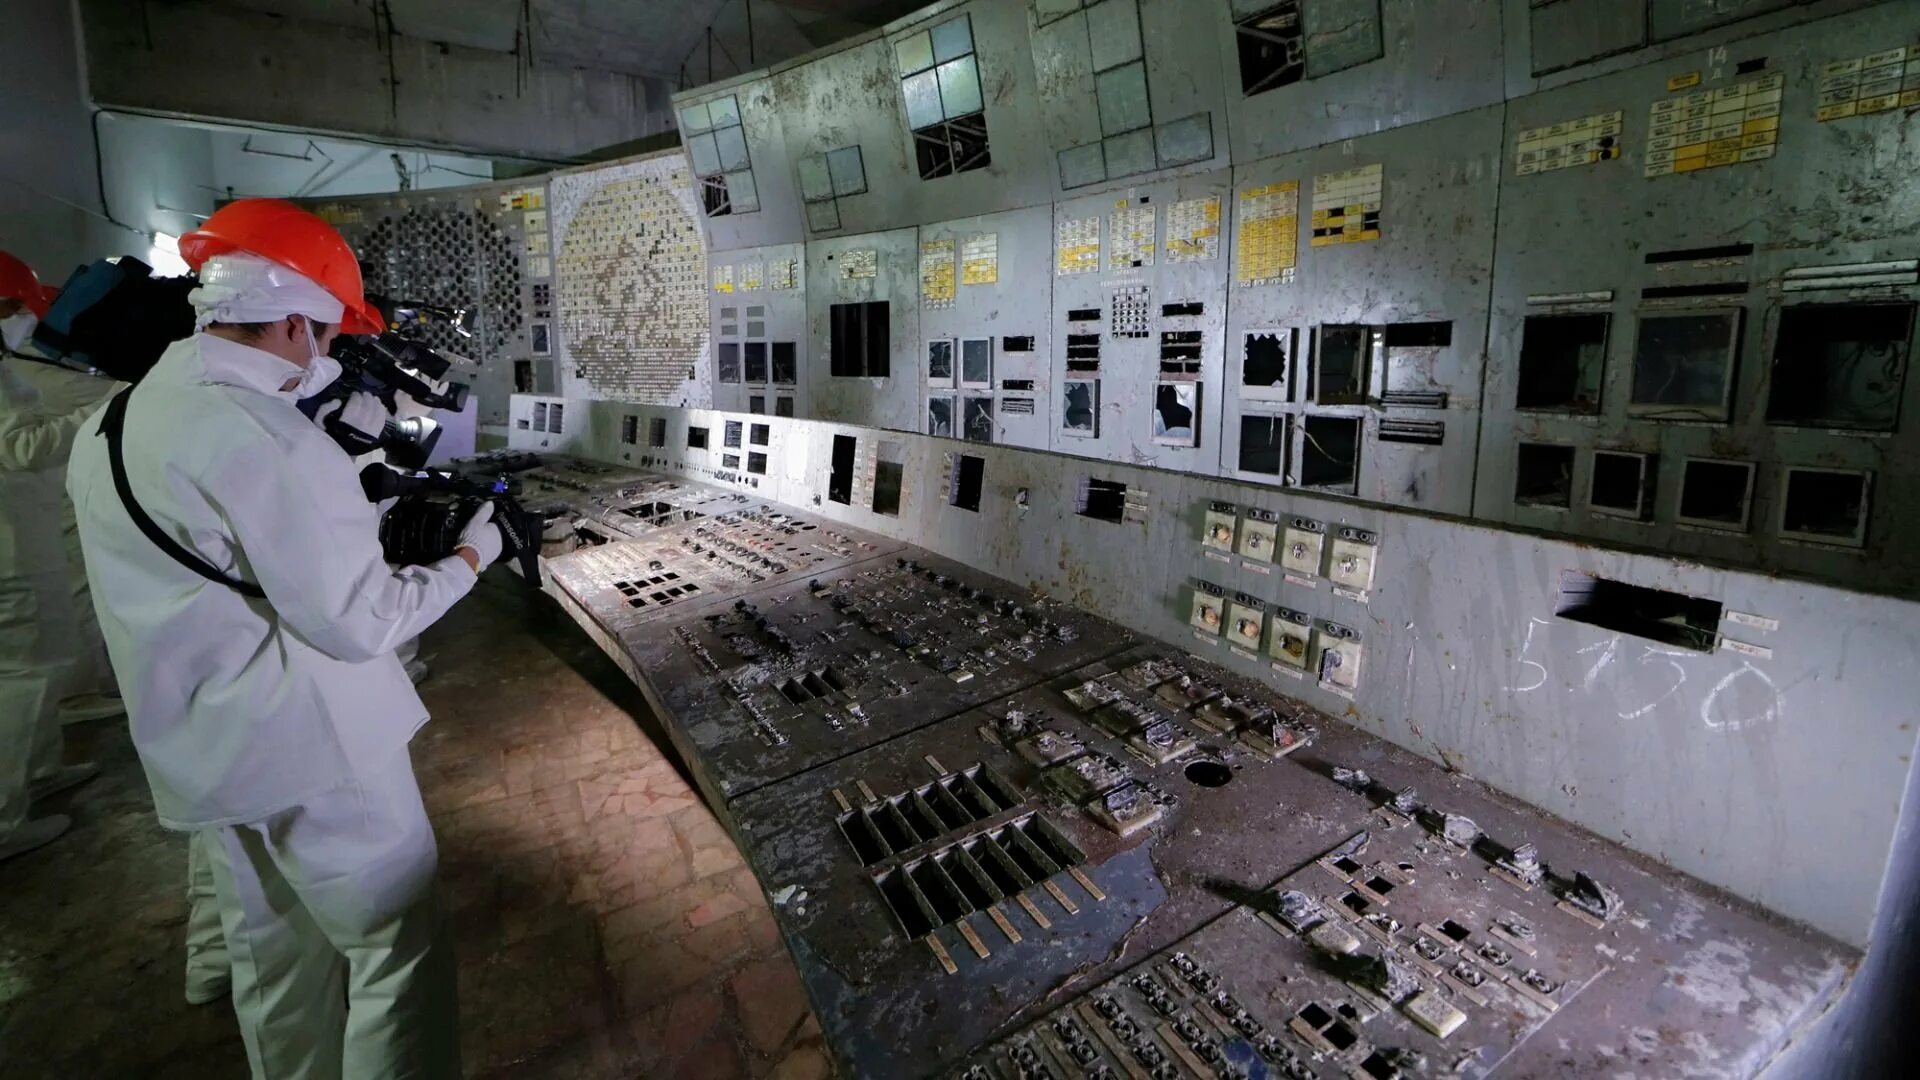 4 Энергоблок Чернобыльской АЭС. Реактор 4 энергоблока ЧАЭС. Чернобыльская АЭС 2022. 4 Энергоблок ЧАЭС 1986.